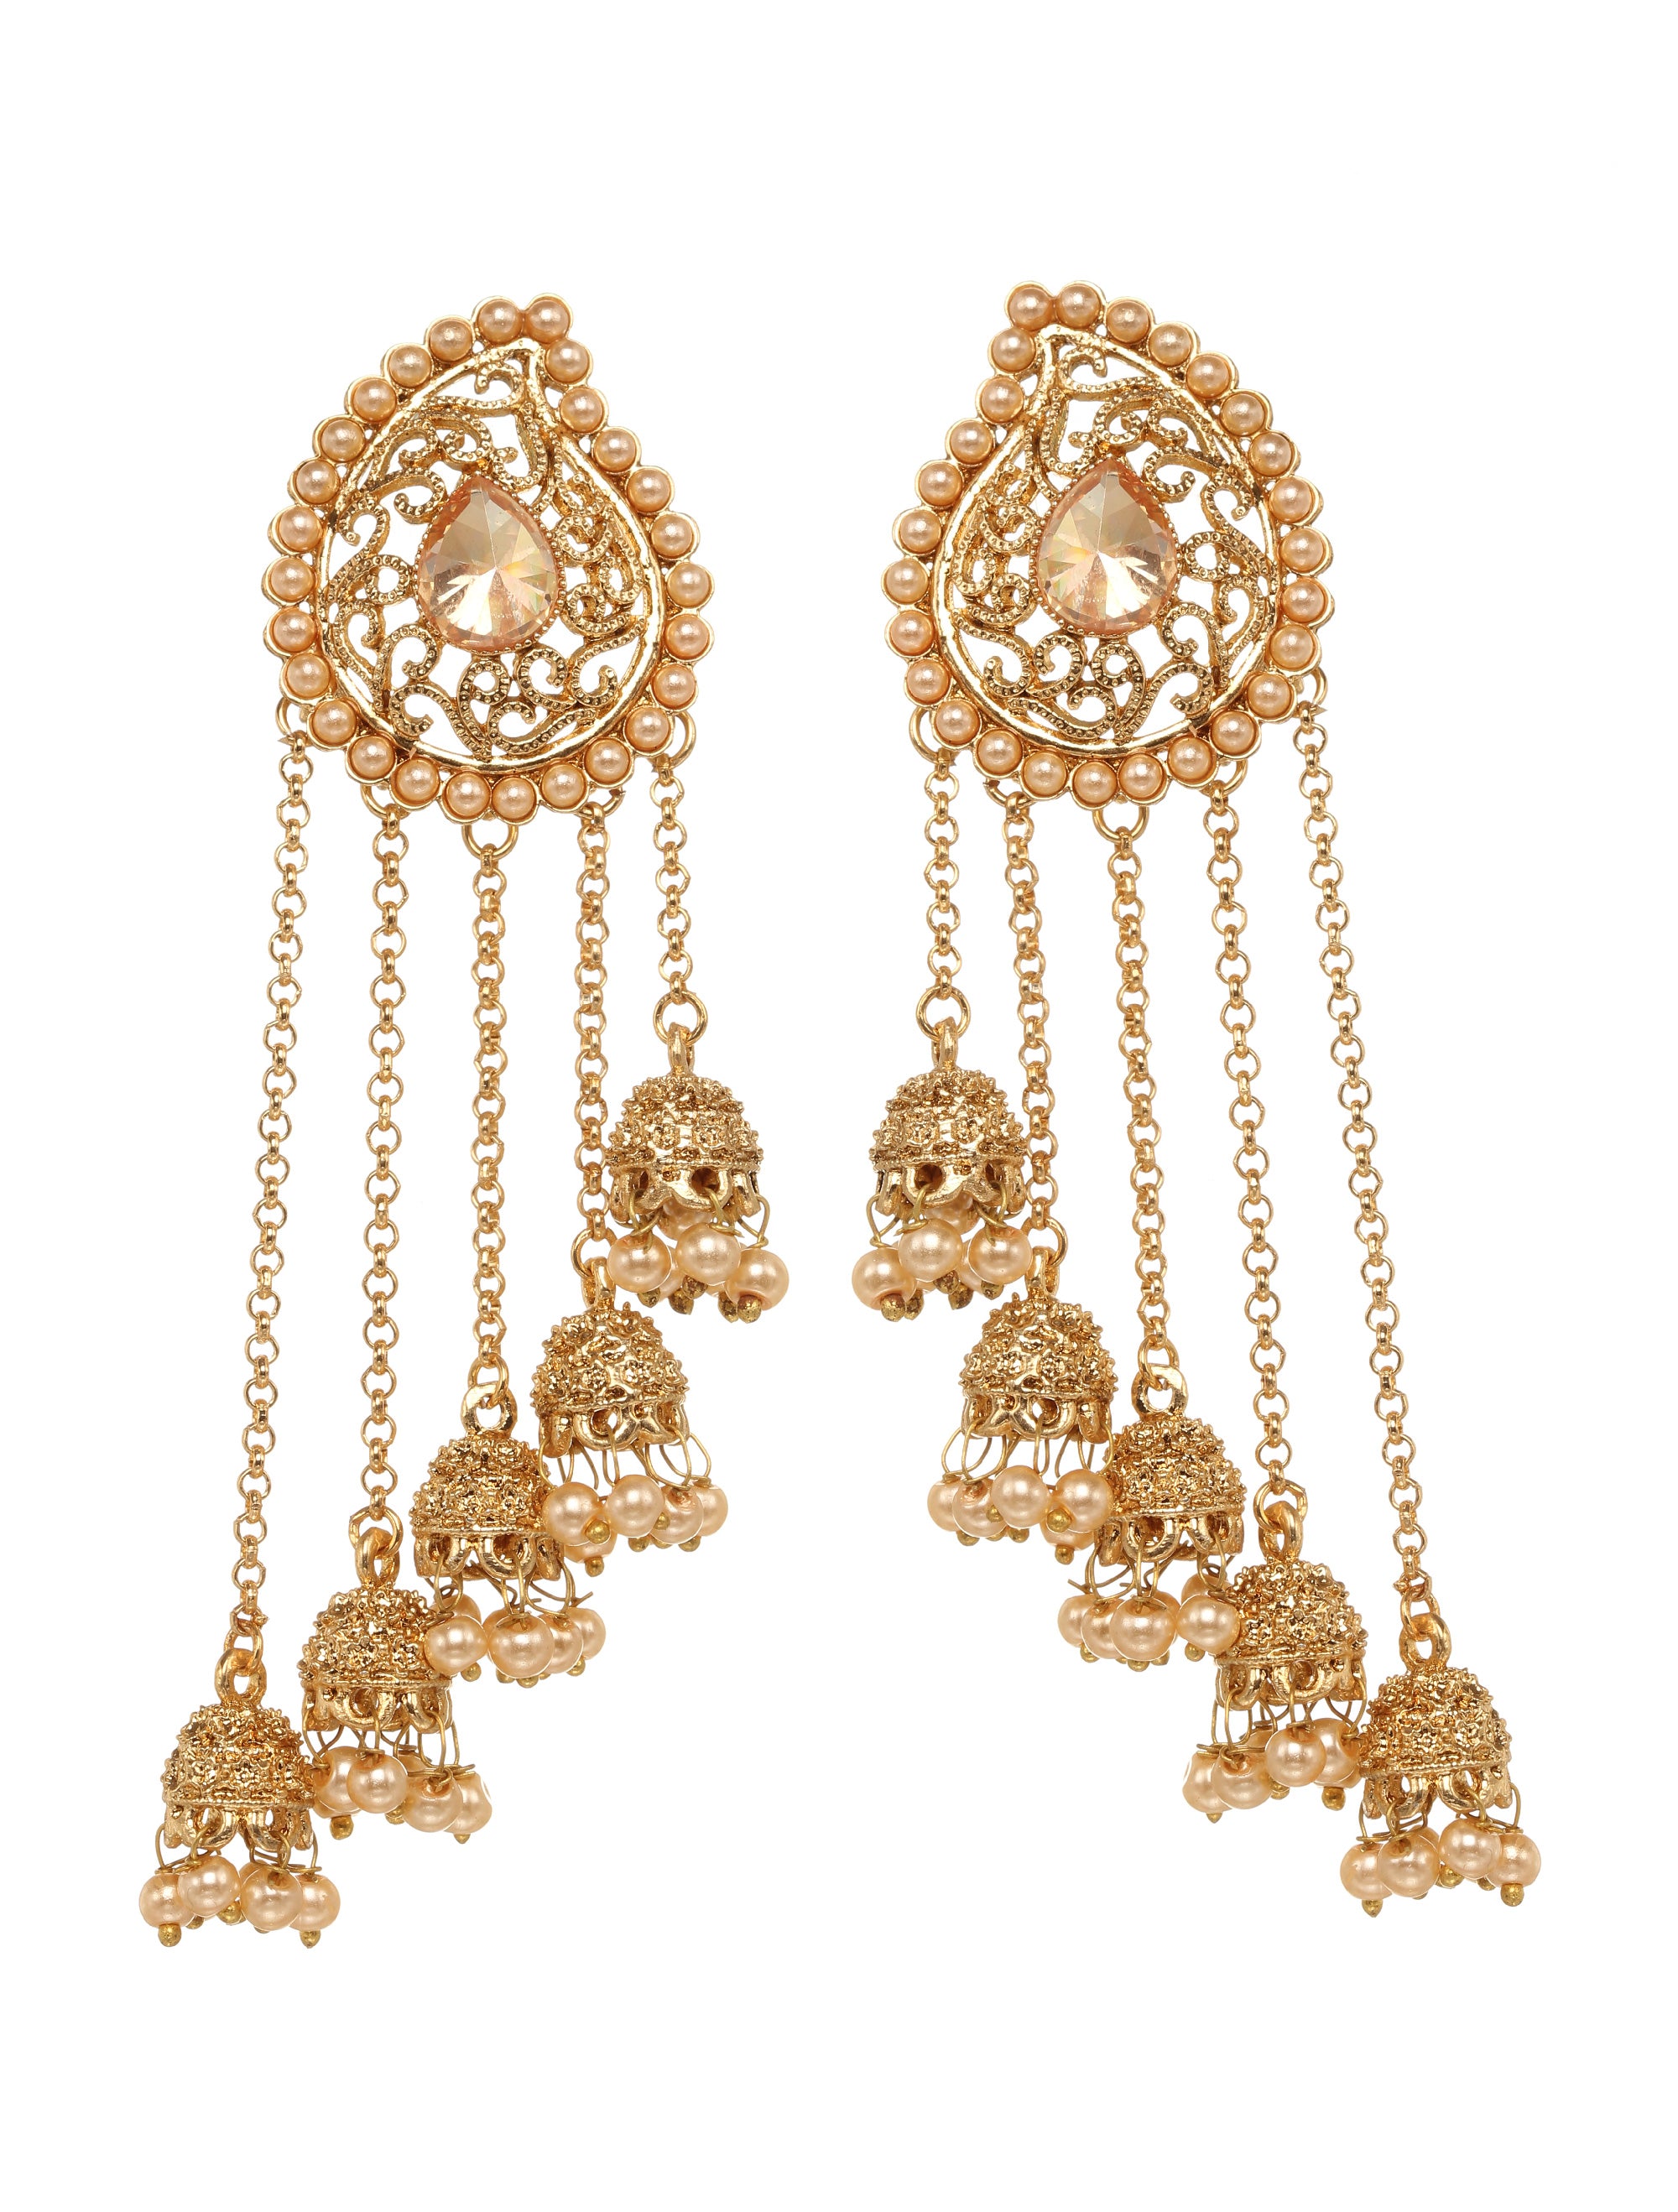 Buy Udaya Antique Jhumka Earrings with Ear Chain | Tarinika - Tarinika India